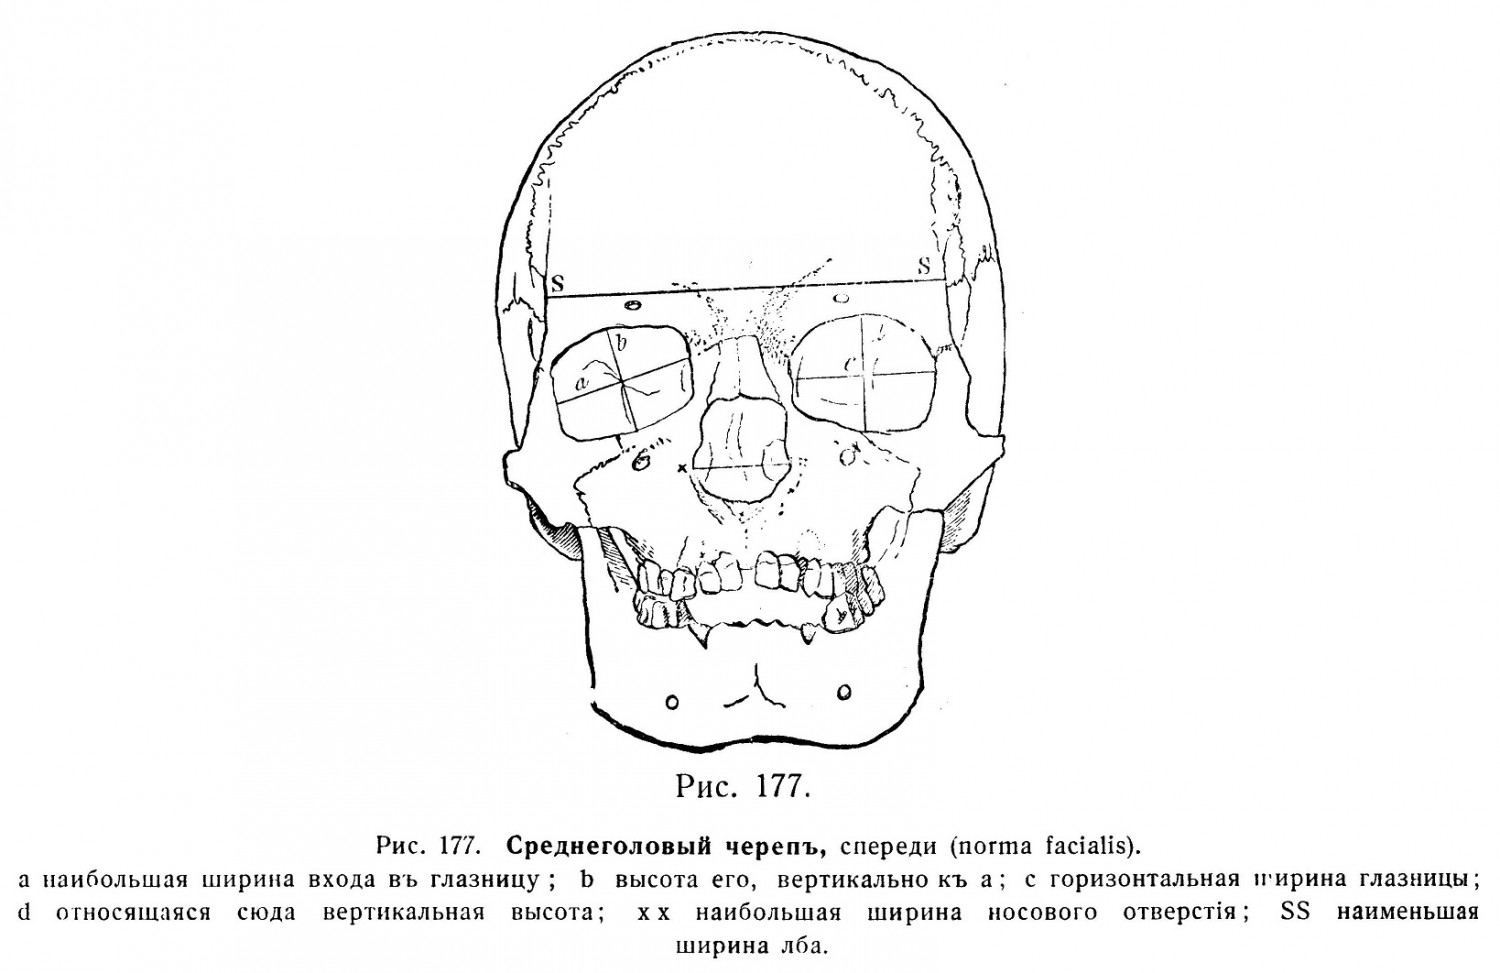 Среднеголовый черепъ, спереди (norma facialis)